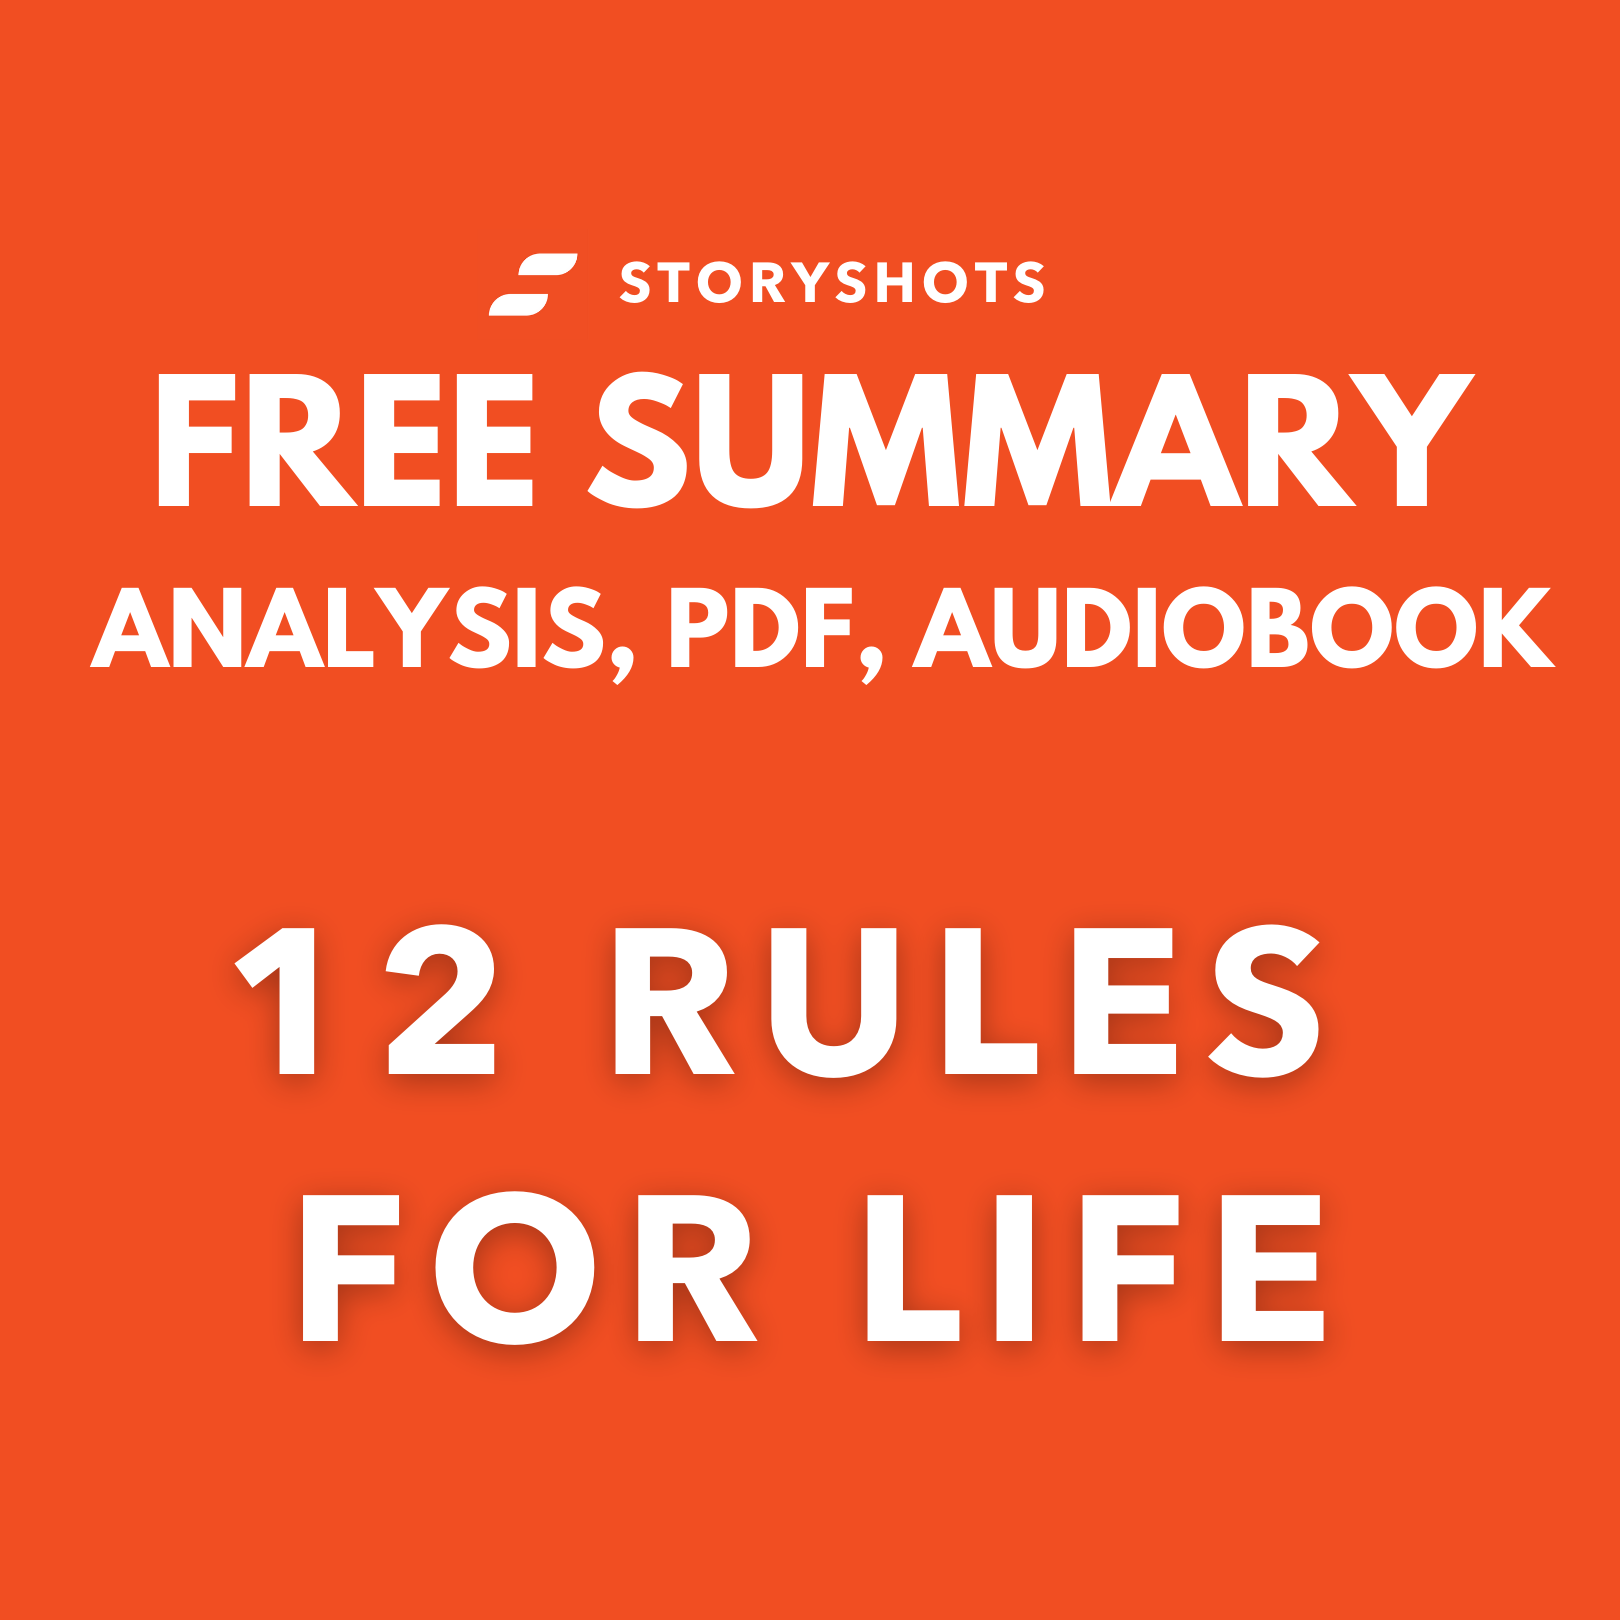 jordan peterson 12 rules for life audiobook download free